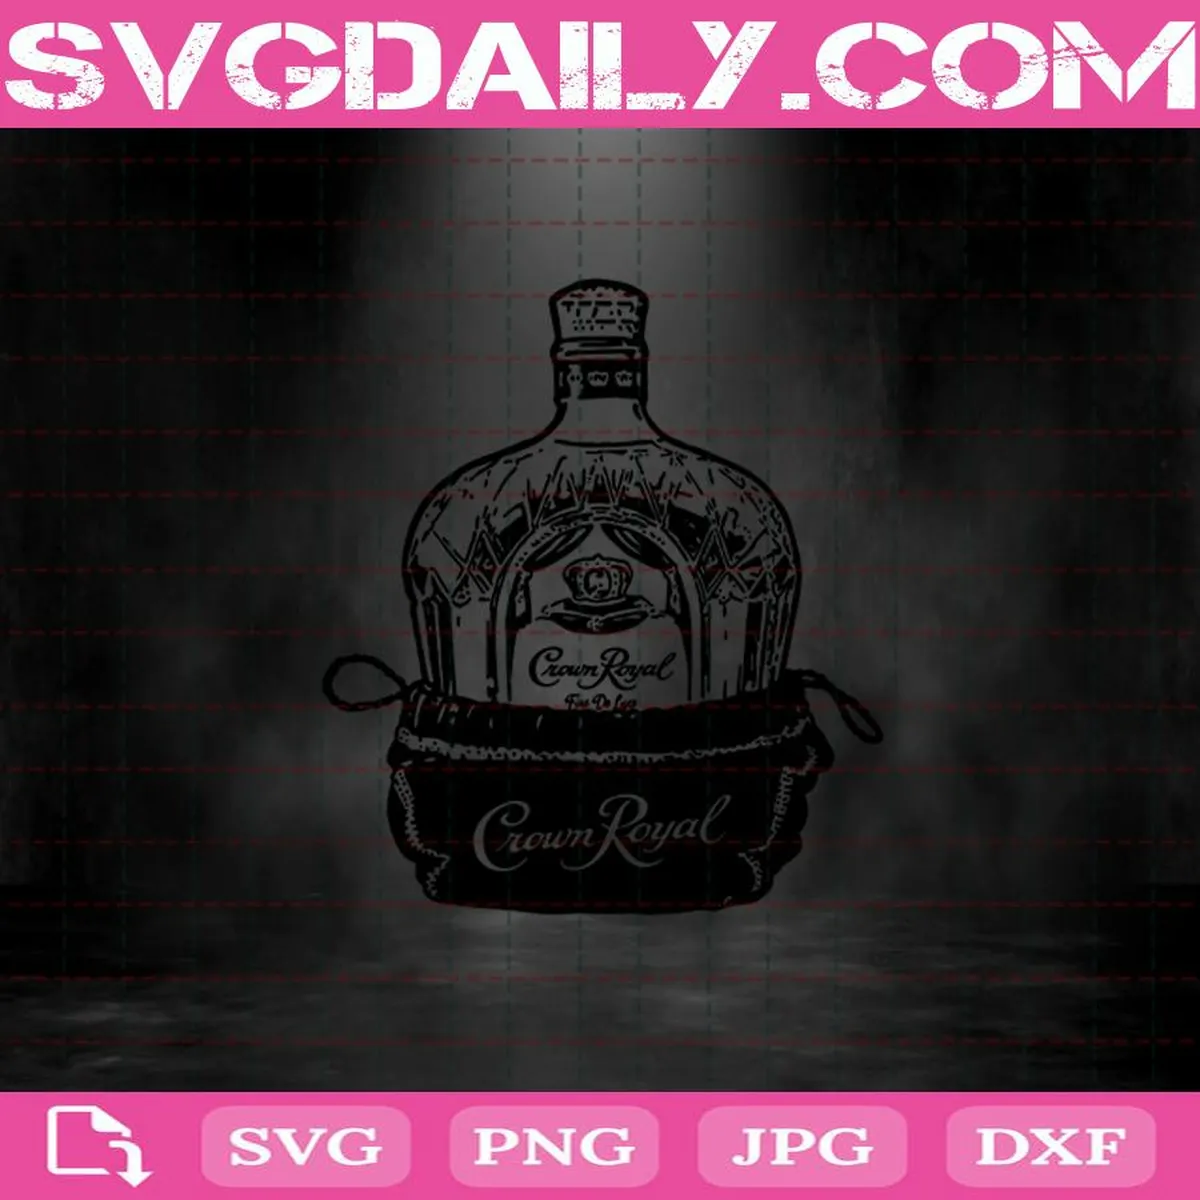 Crown Royal Bottle And Bag Design Element Svg, Crown Royal Alcohol Svg, Crown Royal Svg, Drink Svg